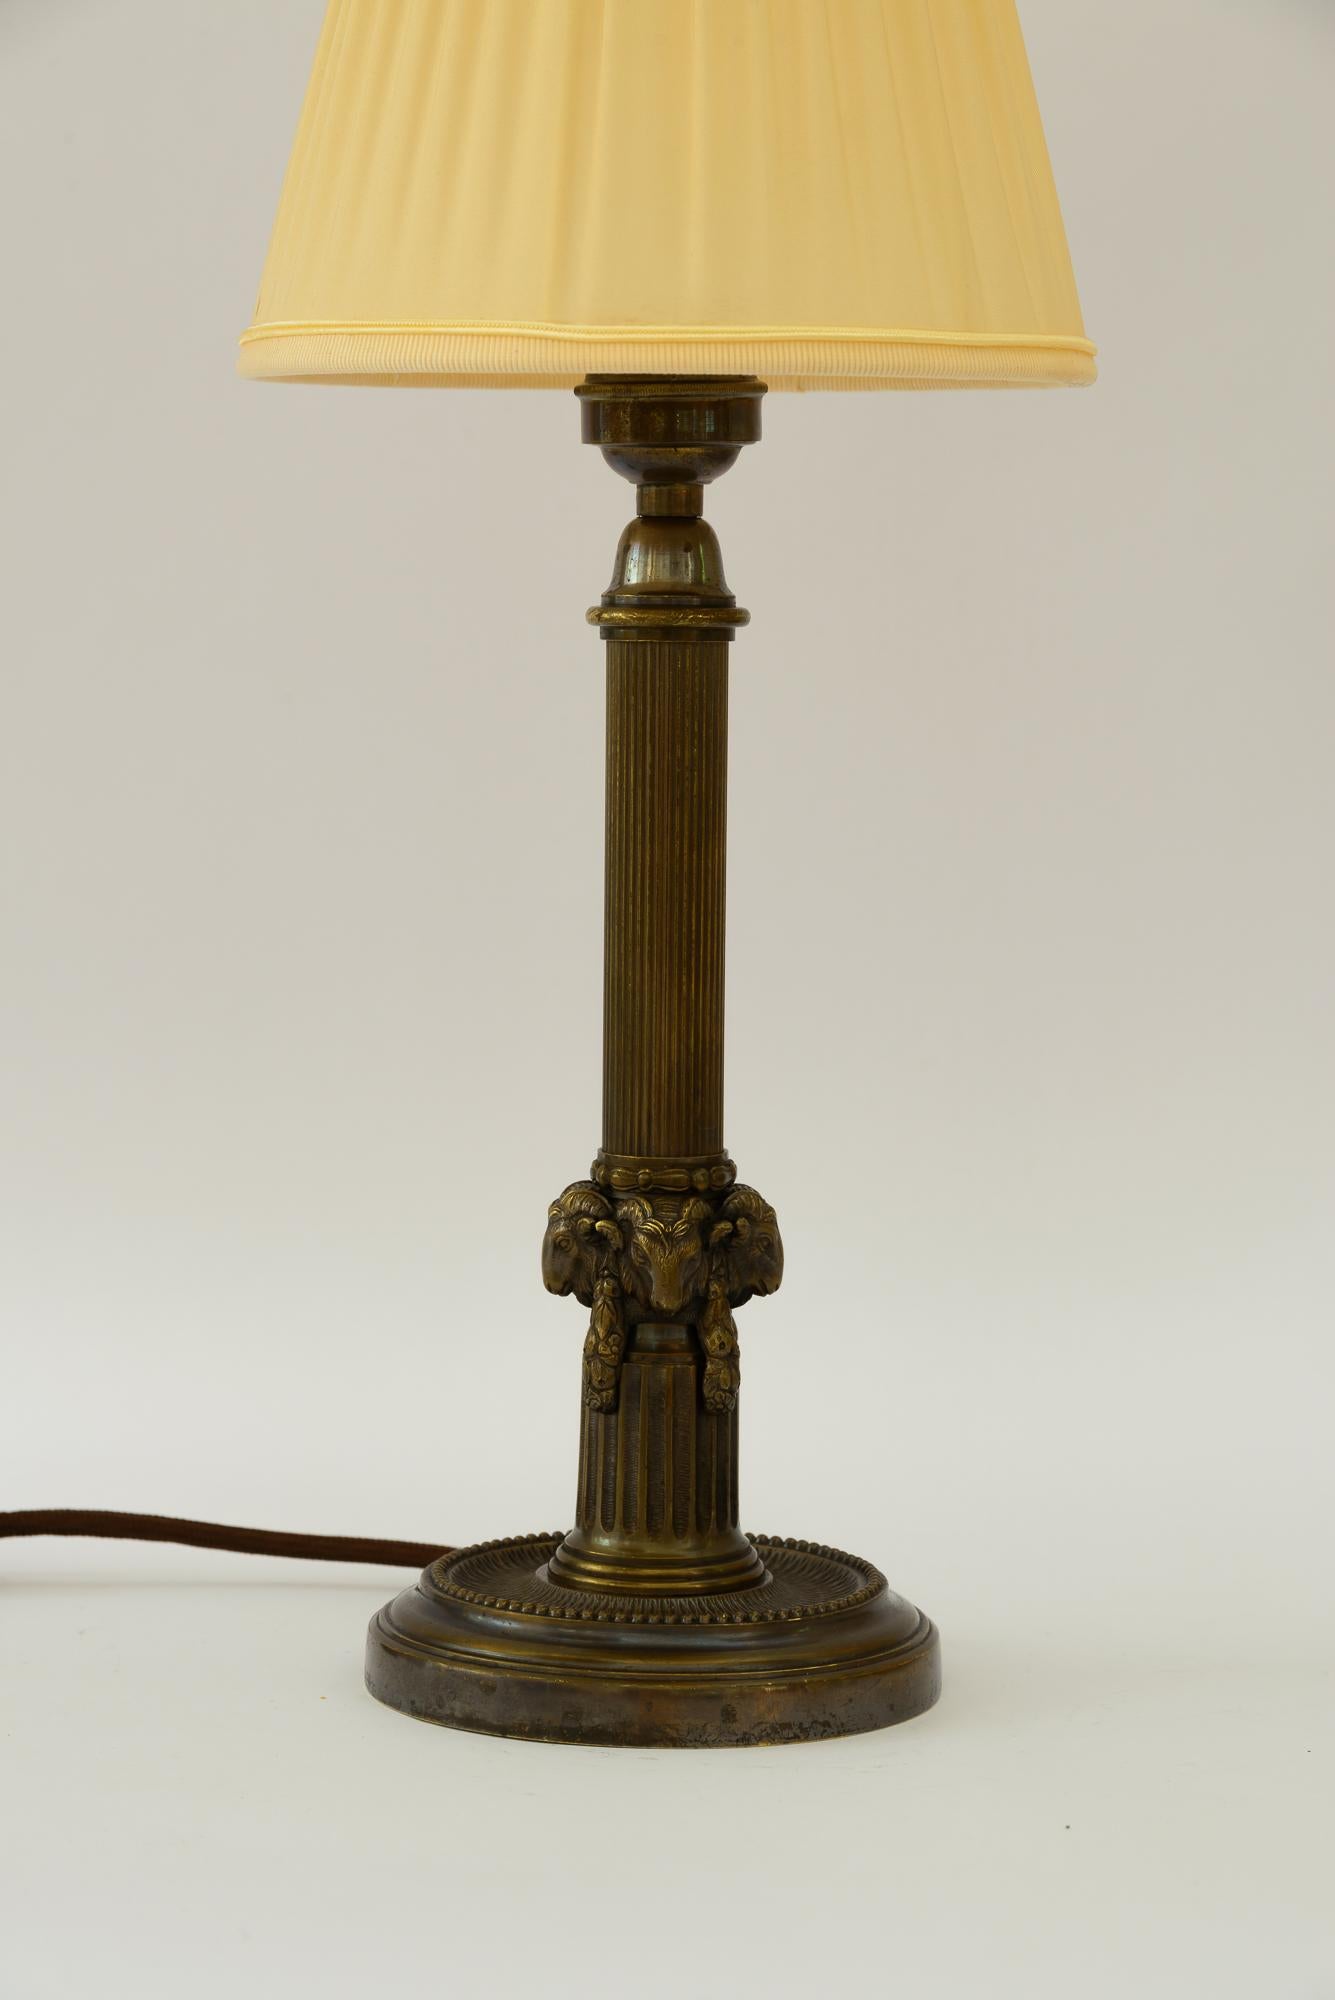 Lampe de table Art déco avec tête de capricorn et abat-jour en tissu vienna vers les années 1920
Etat original
L'abat-jour en tissu est remplacé (neuf).